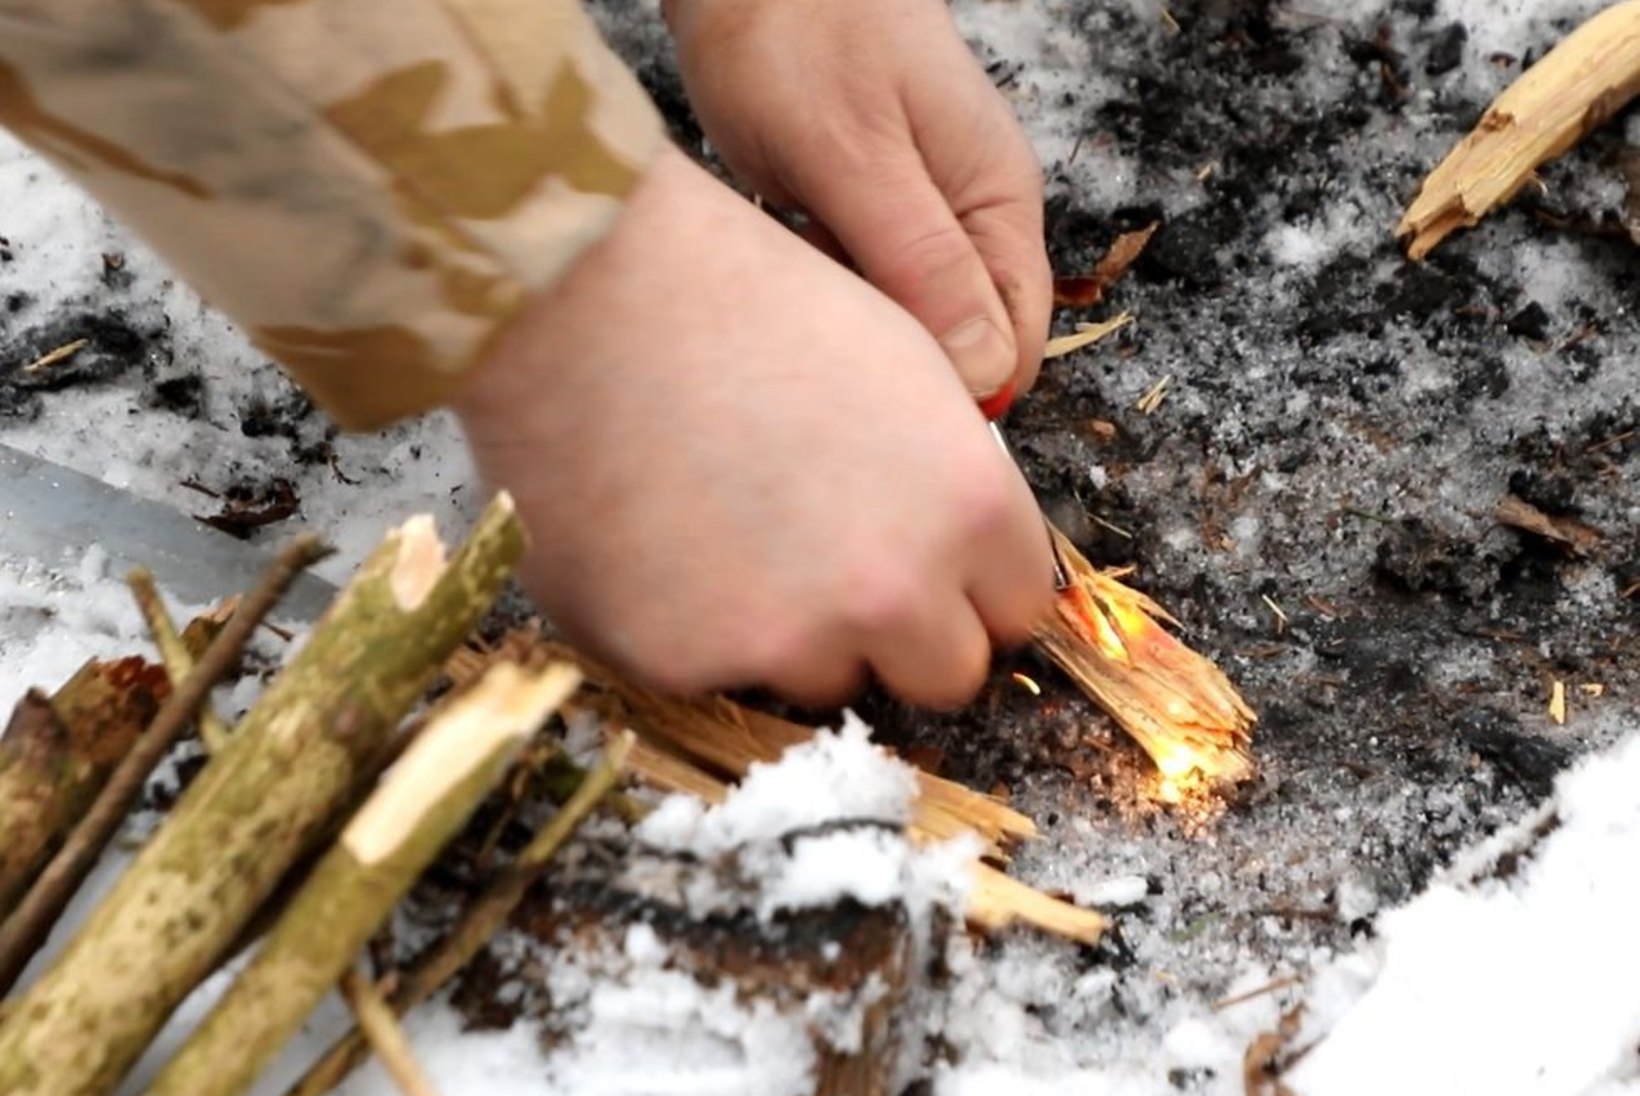 ÕHTULEHE VIDEO | 21. SAJANDI METSAVENNAD III: kuidas saada metsas lõke põlema vaid tulepulga abiga?